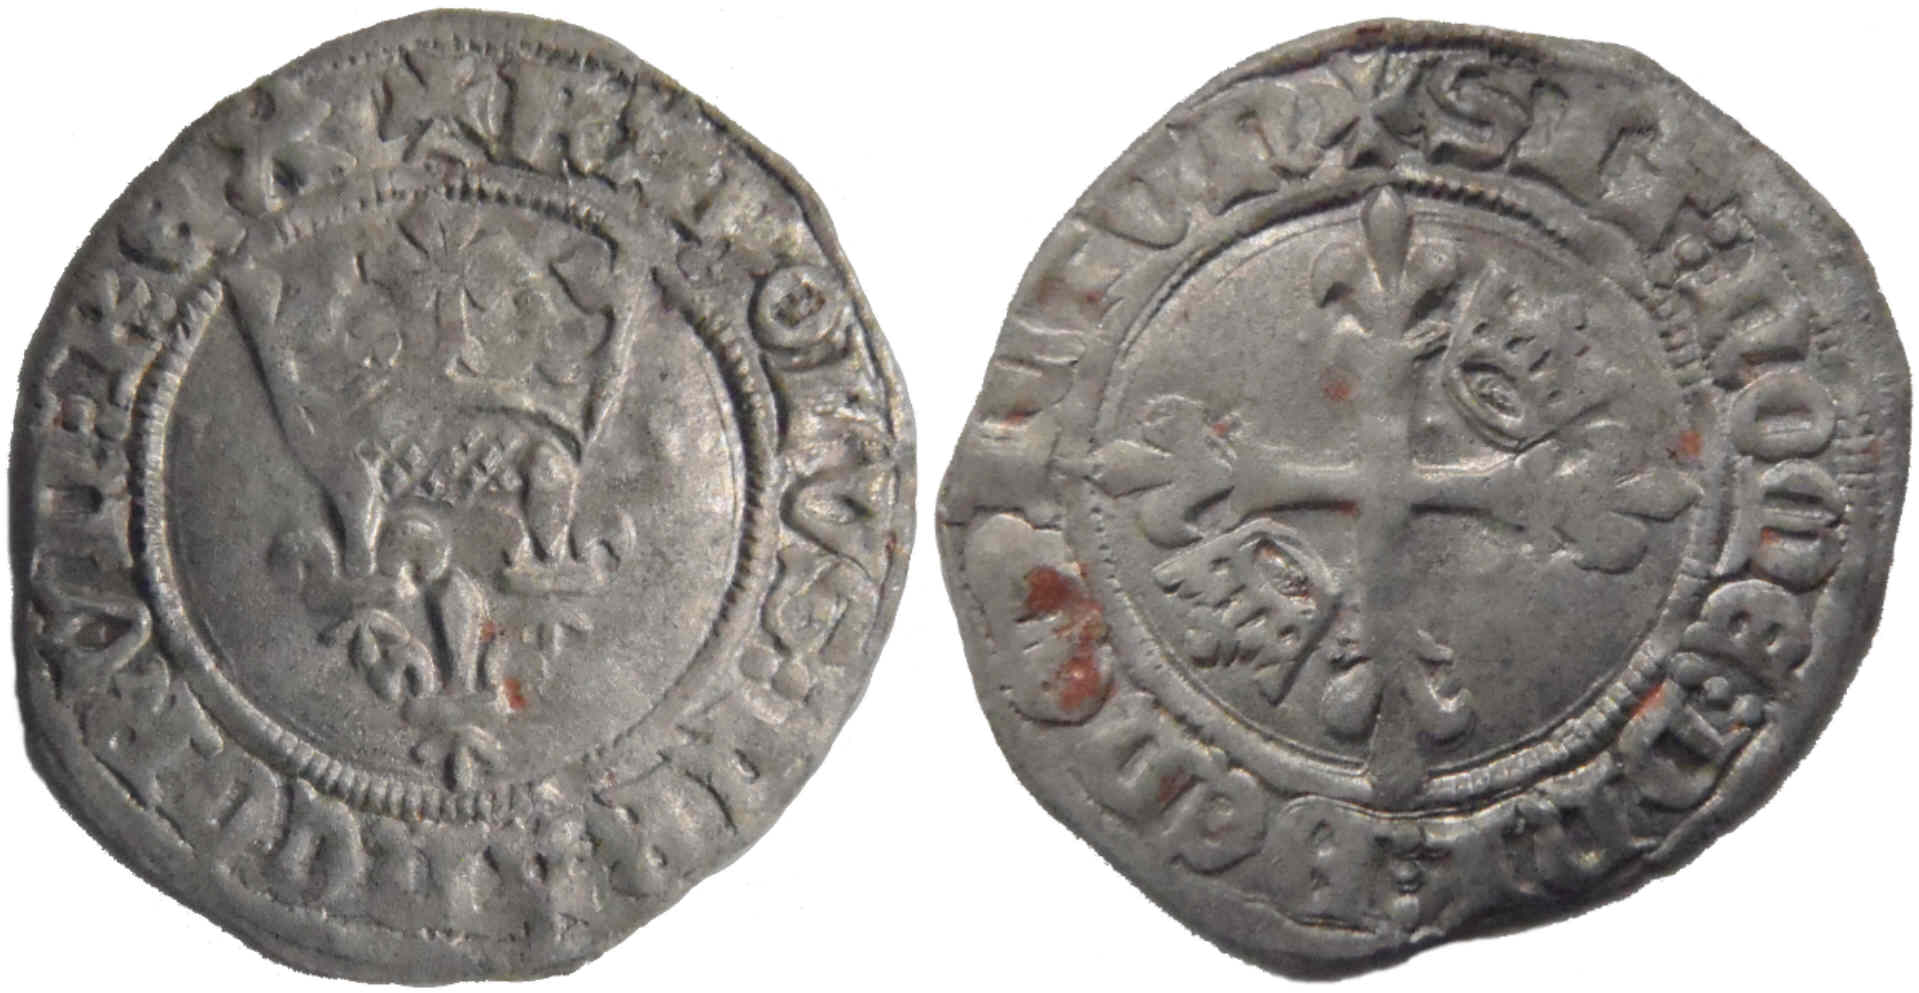 Des gros dits «florettes» ducaux inédits frappés au nom de Charles VI à Chalon-sur-Saône en 1419 – partie 7 (fin)